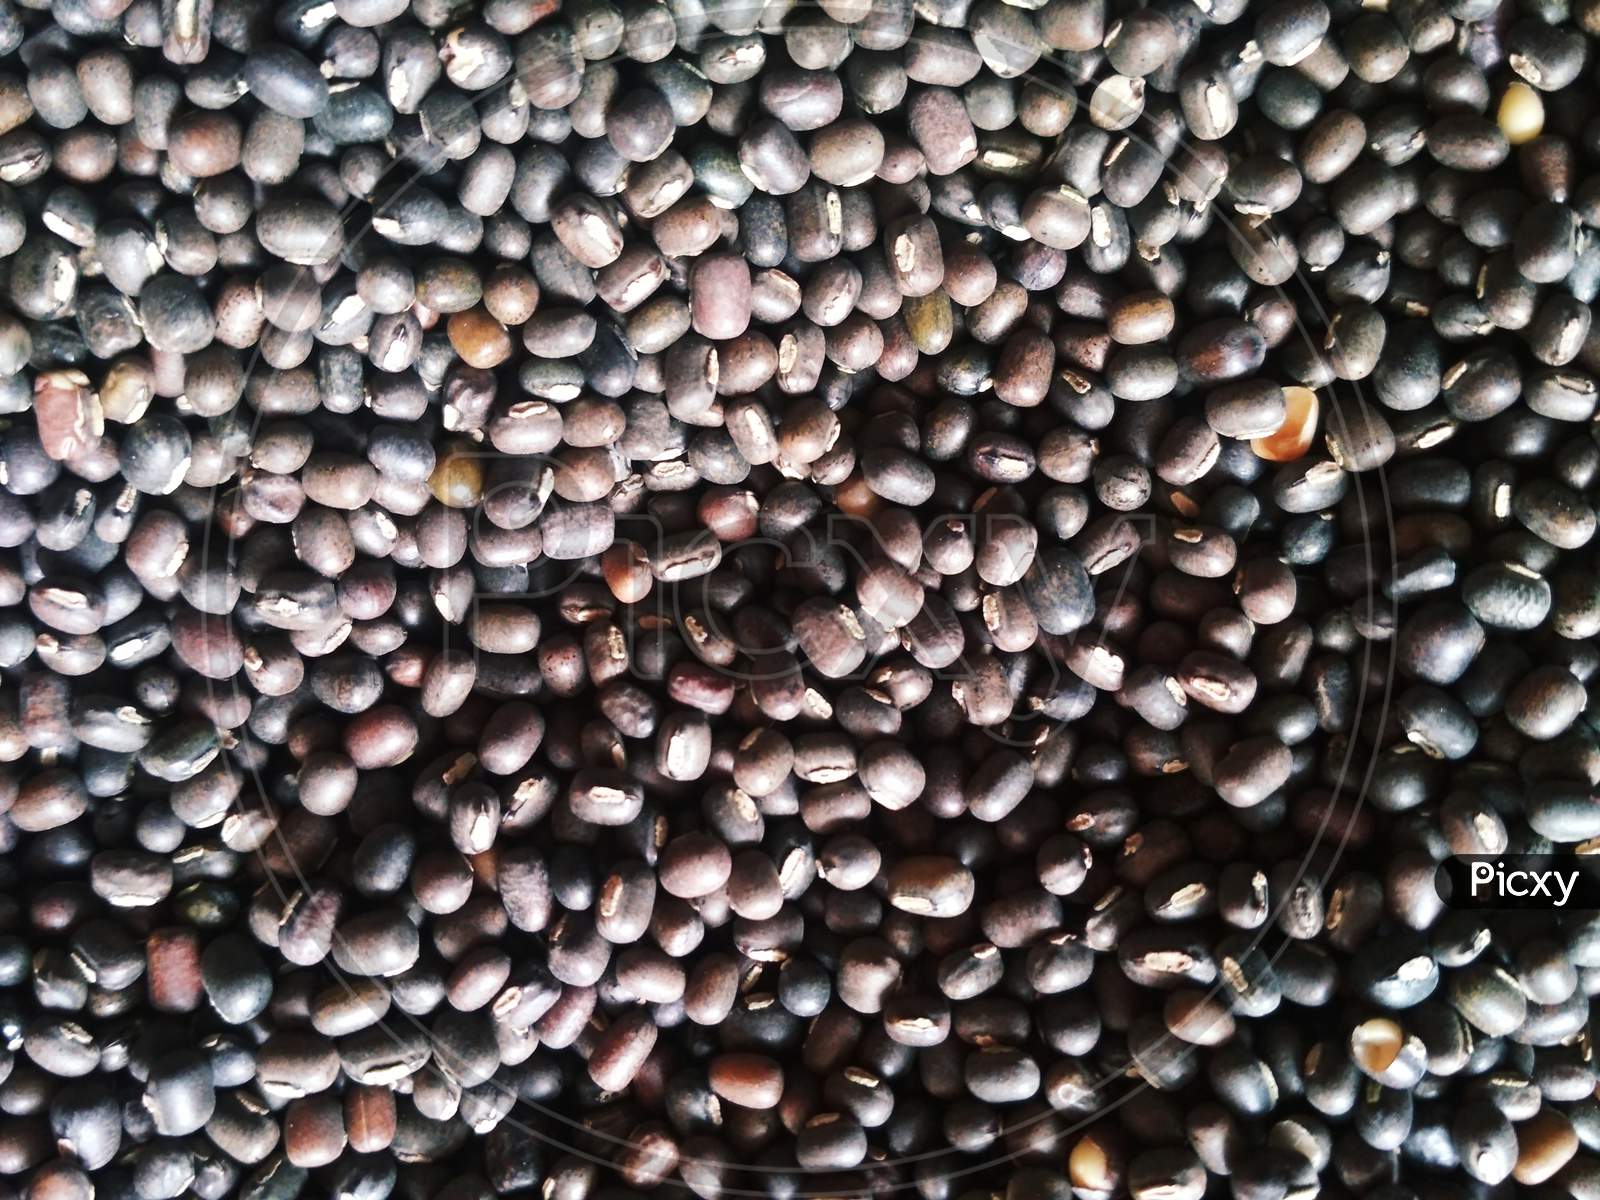 Black gram beans